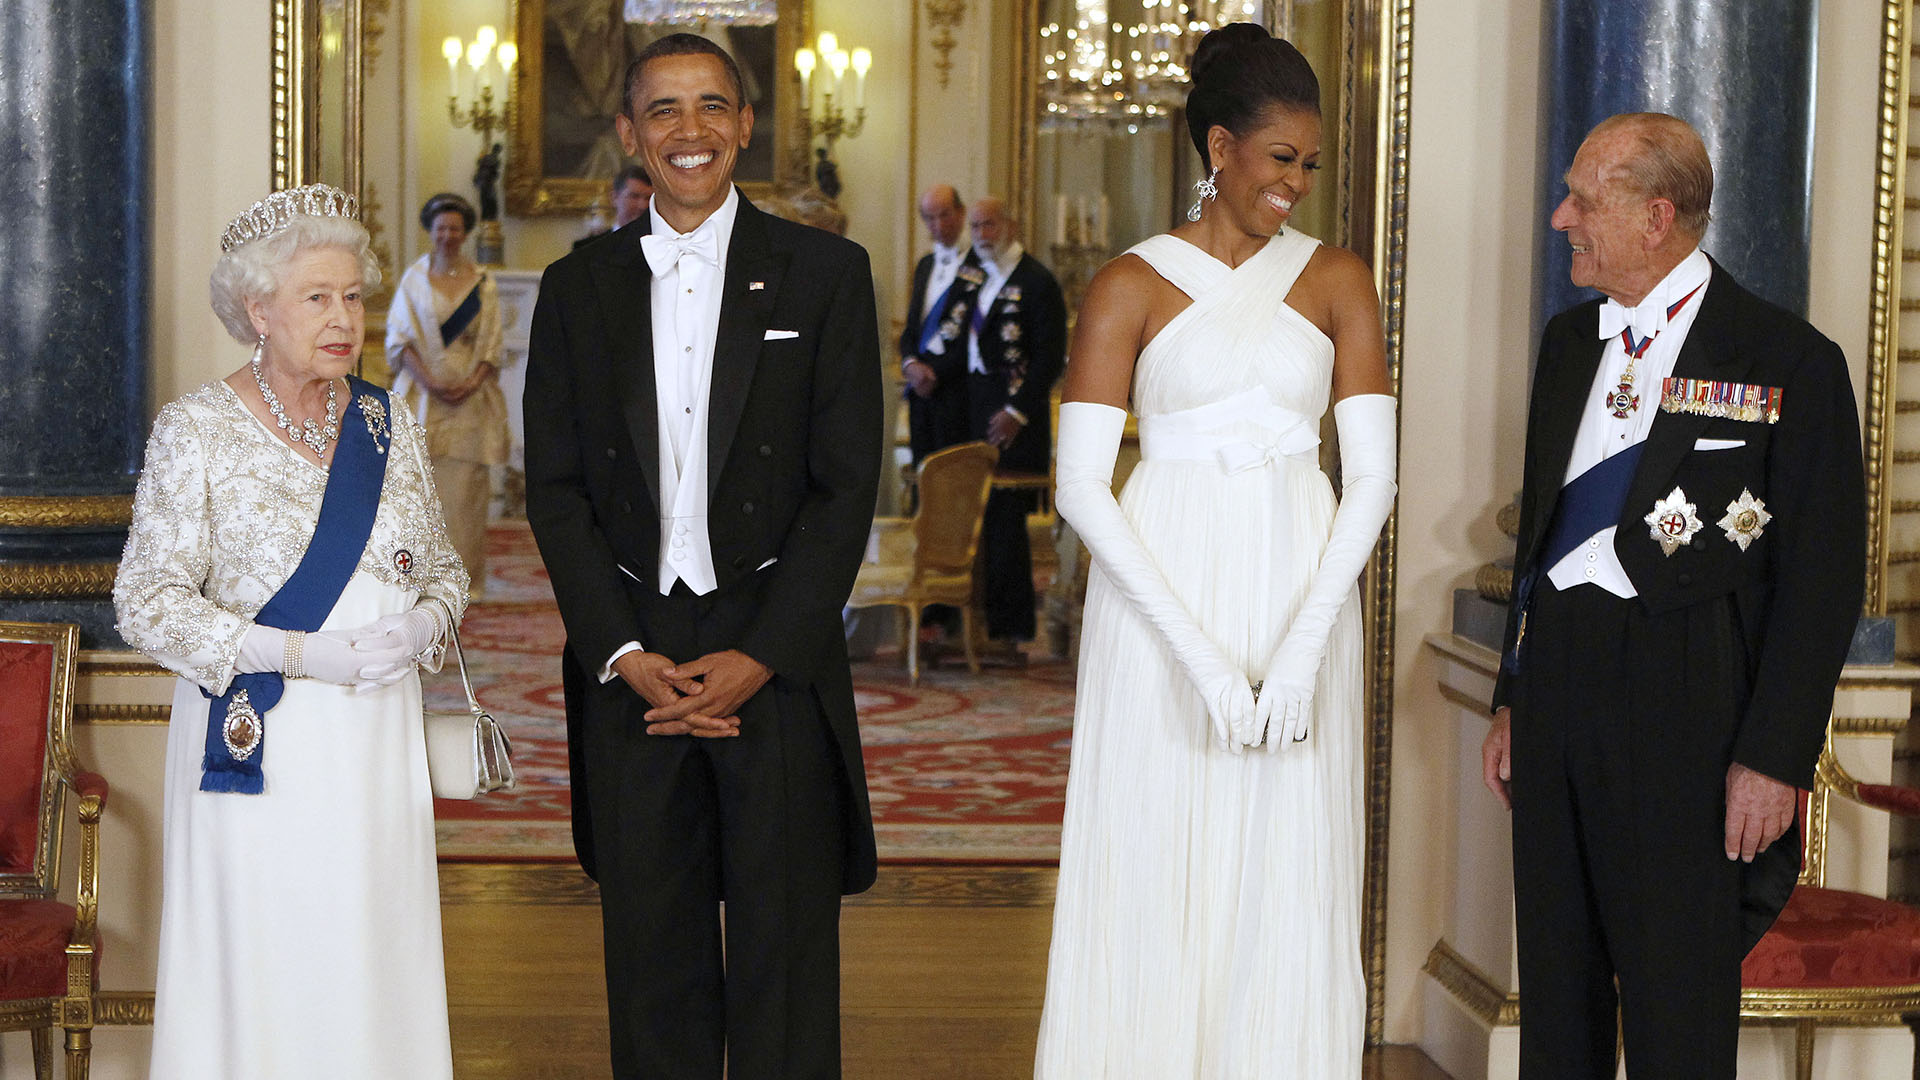 La reina Isabel II y Barack Obama posan con la primera dama estadounidense Michelle Obama y el príncipe Felipe, duque de Edimburgo, en la Sala de Música del Palacio de Buckingham antes de un Banquete de Estado el 24 de mayo de 2011 en Londres, Inglaterra